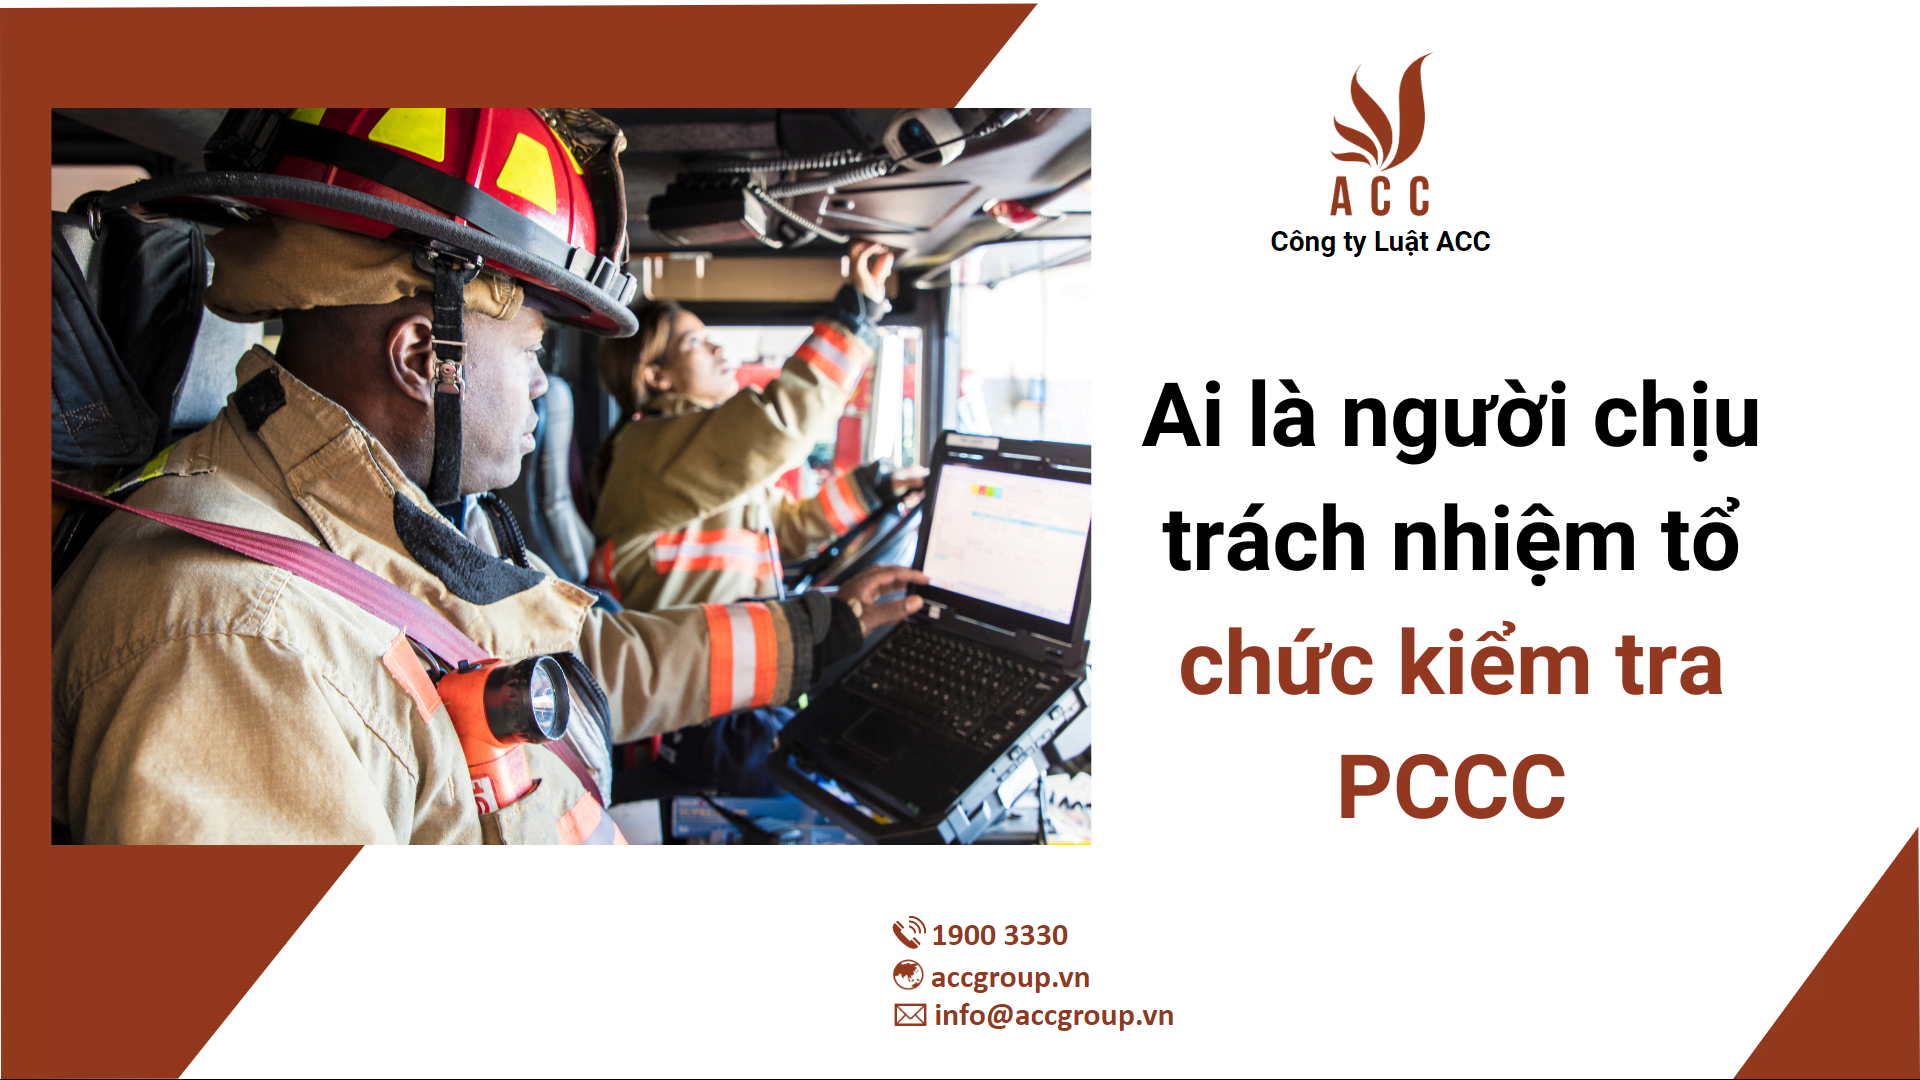 Ai là người chịu trách nhiệm tổ chức kiểm tra PCCC